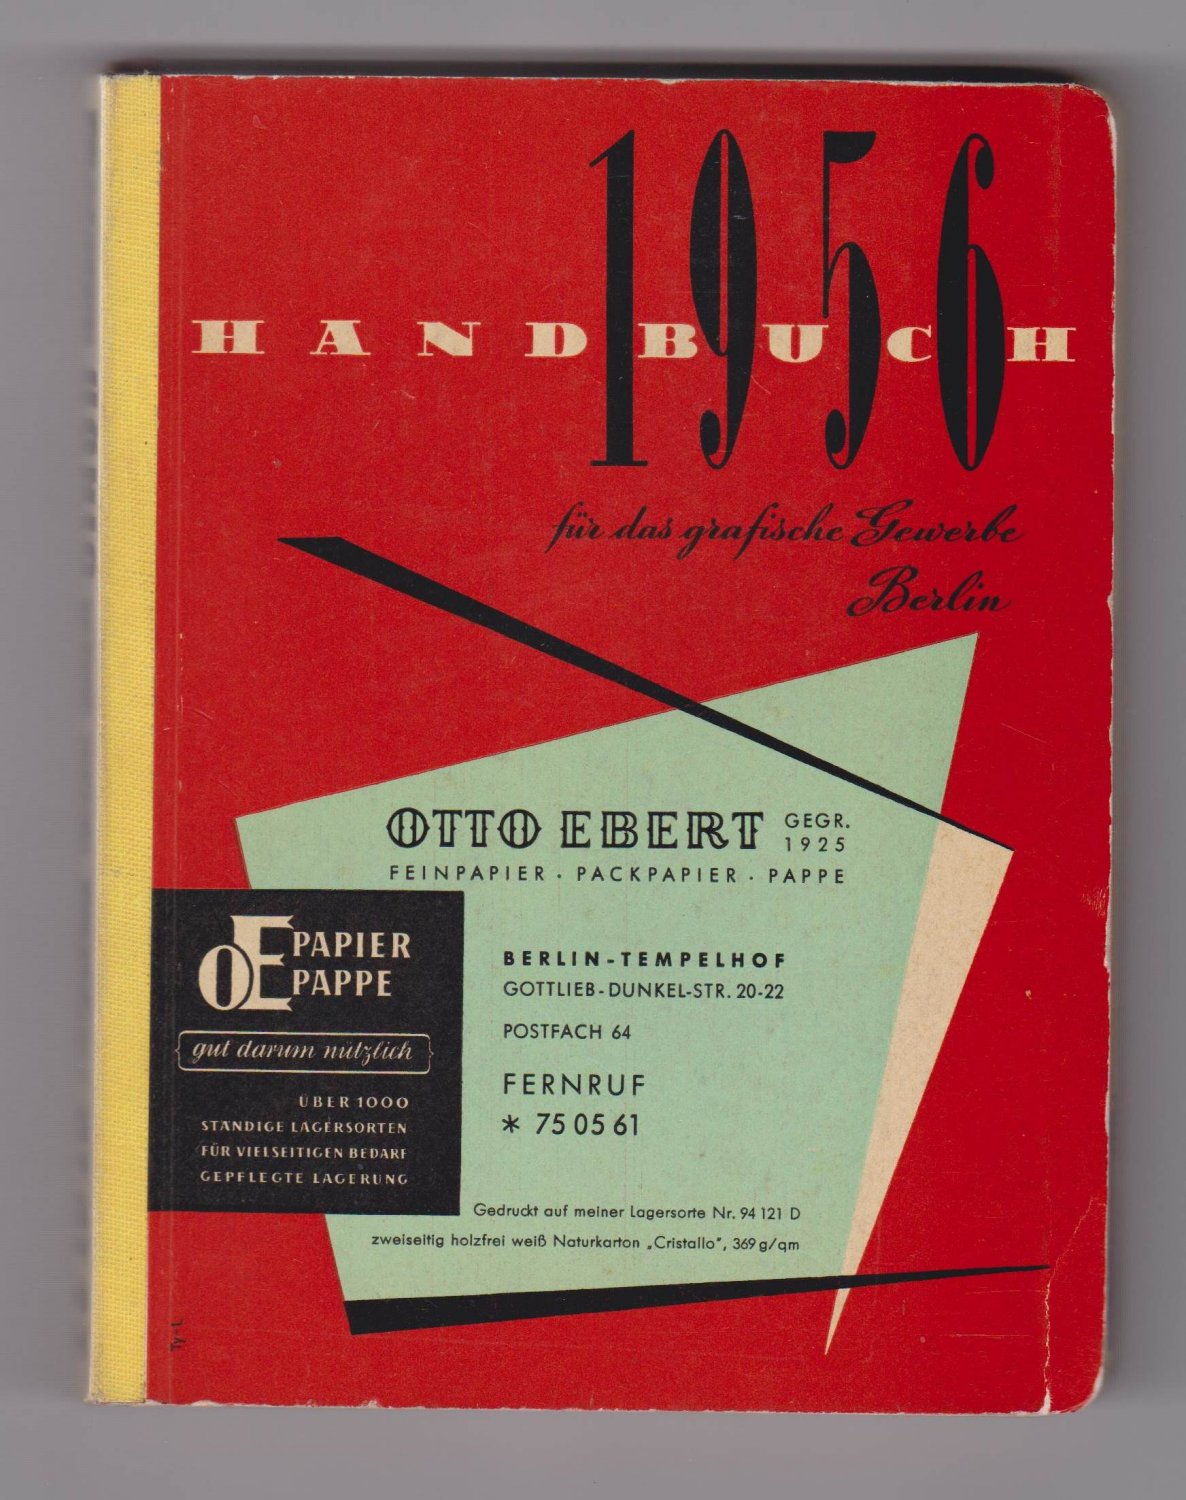   Handbuch für das grafische Gewerbe Berlin. 1956. 